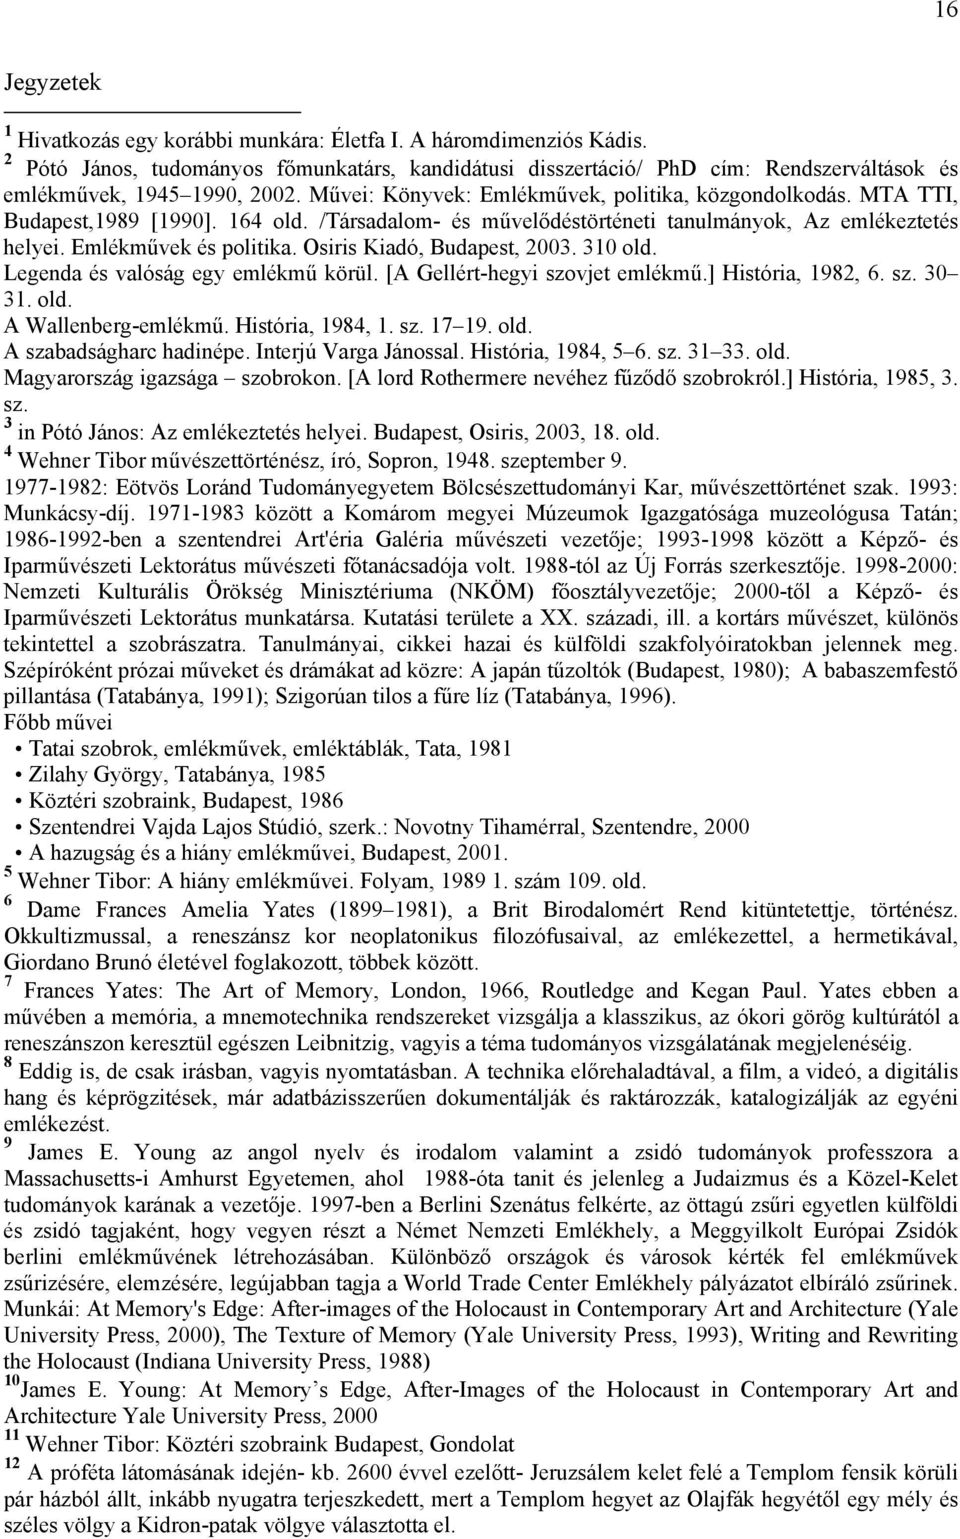 MTA TTI, Budapest,1989 [1990]. 164 old. /Társadalom- és művelődéstörténeti tanulmányok, Az emlékeztetés helyei. Emlékművek és politika. Osiris Kiadó, Budapest, 2003. 310 old.